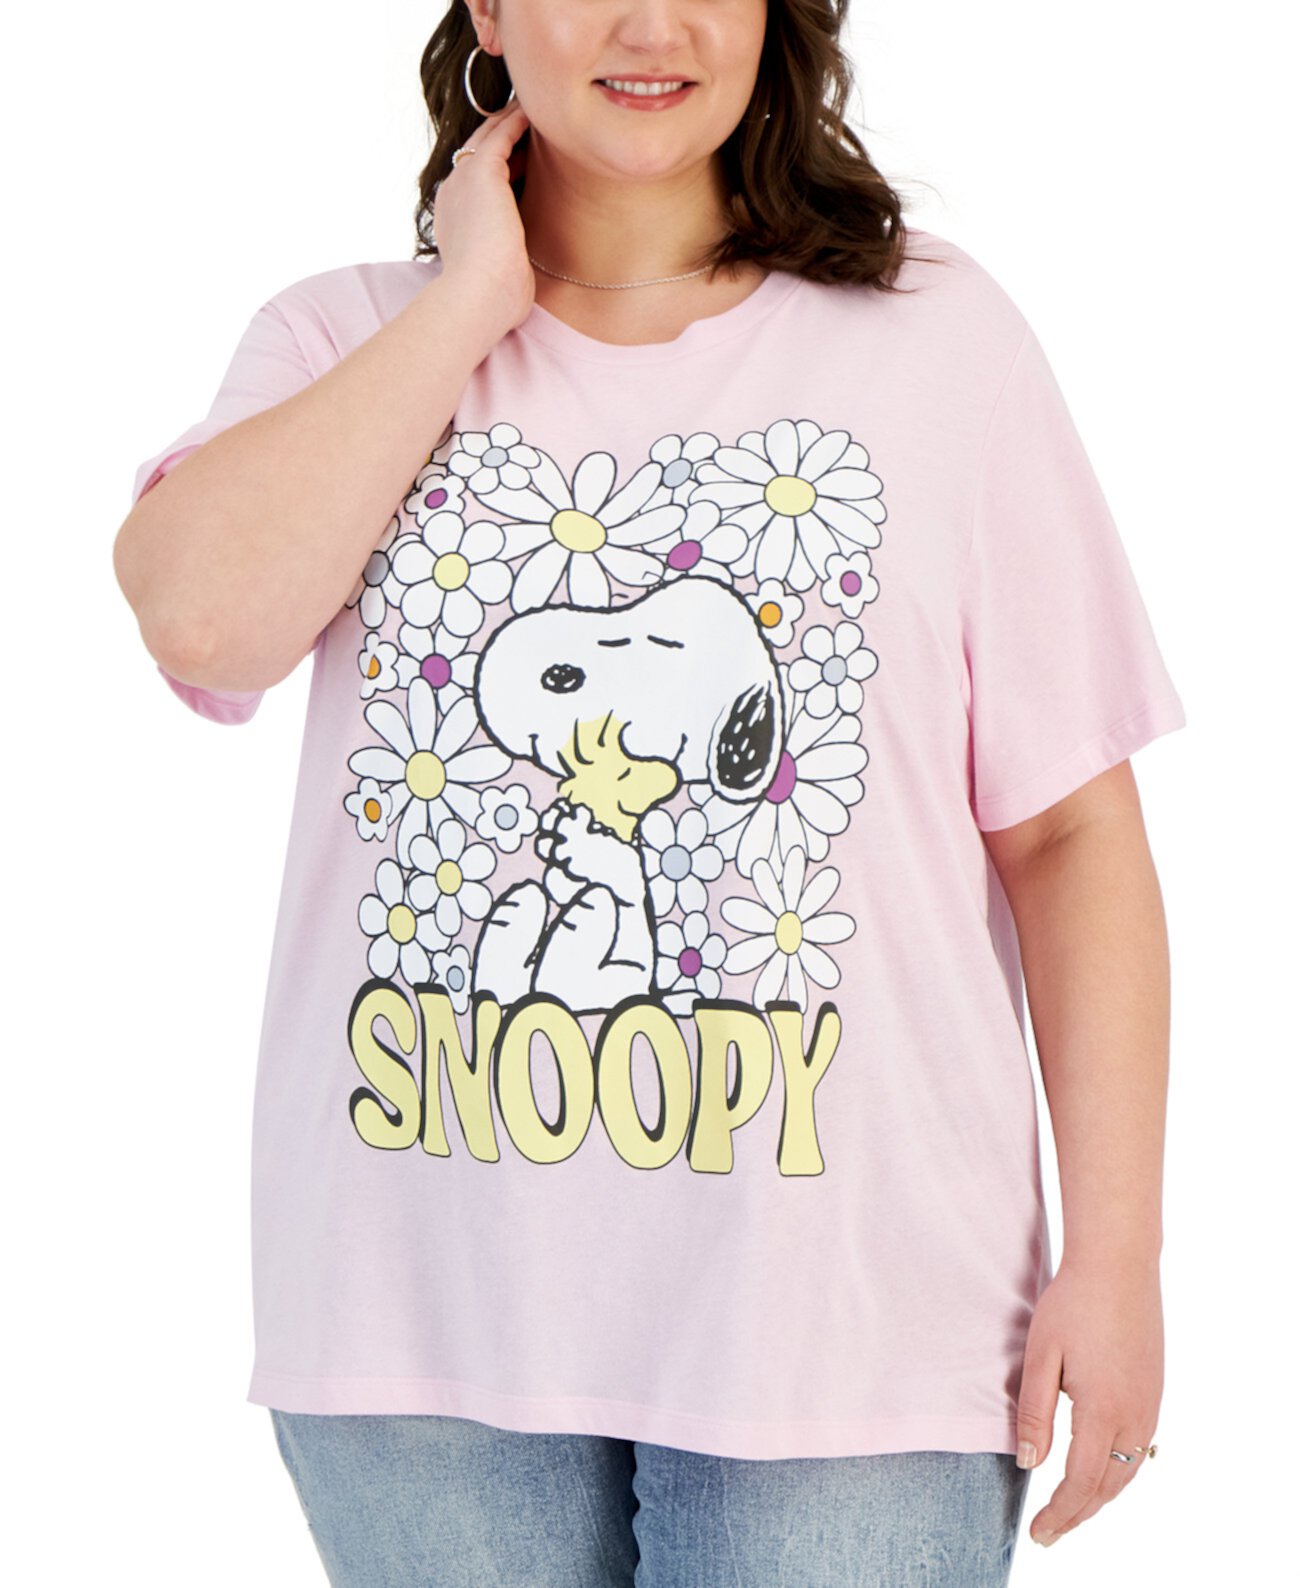 Модная футболка больших размеров с цветочным рисунком Snoppy Grayson Threads, The Label